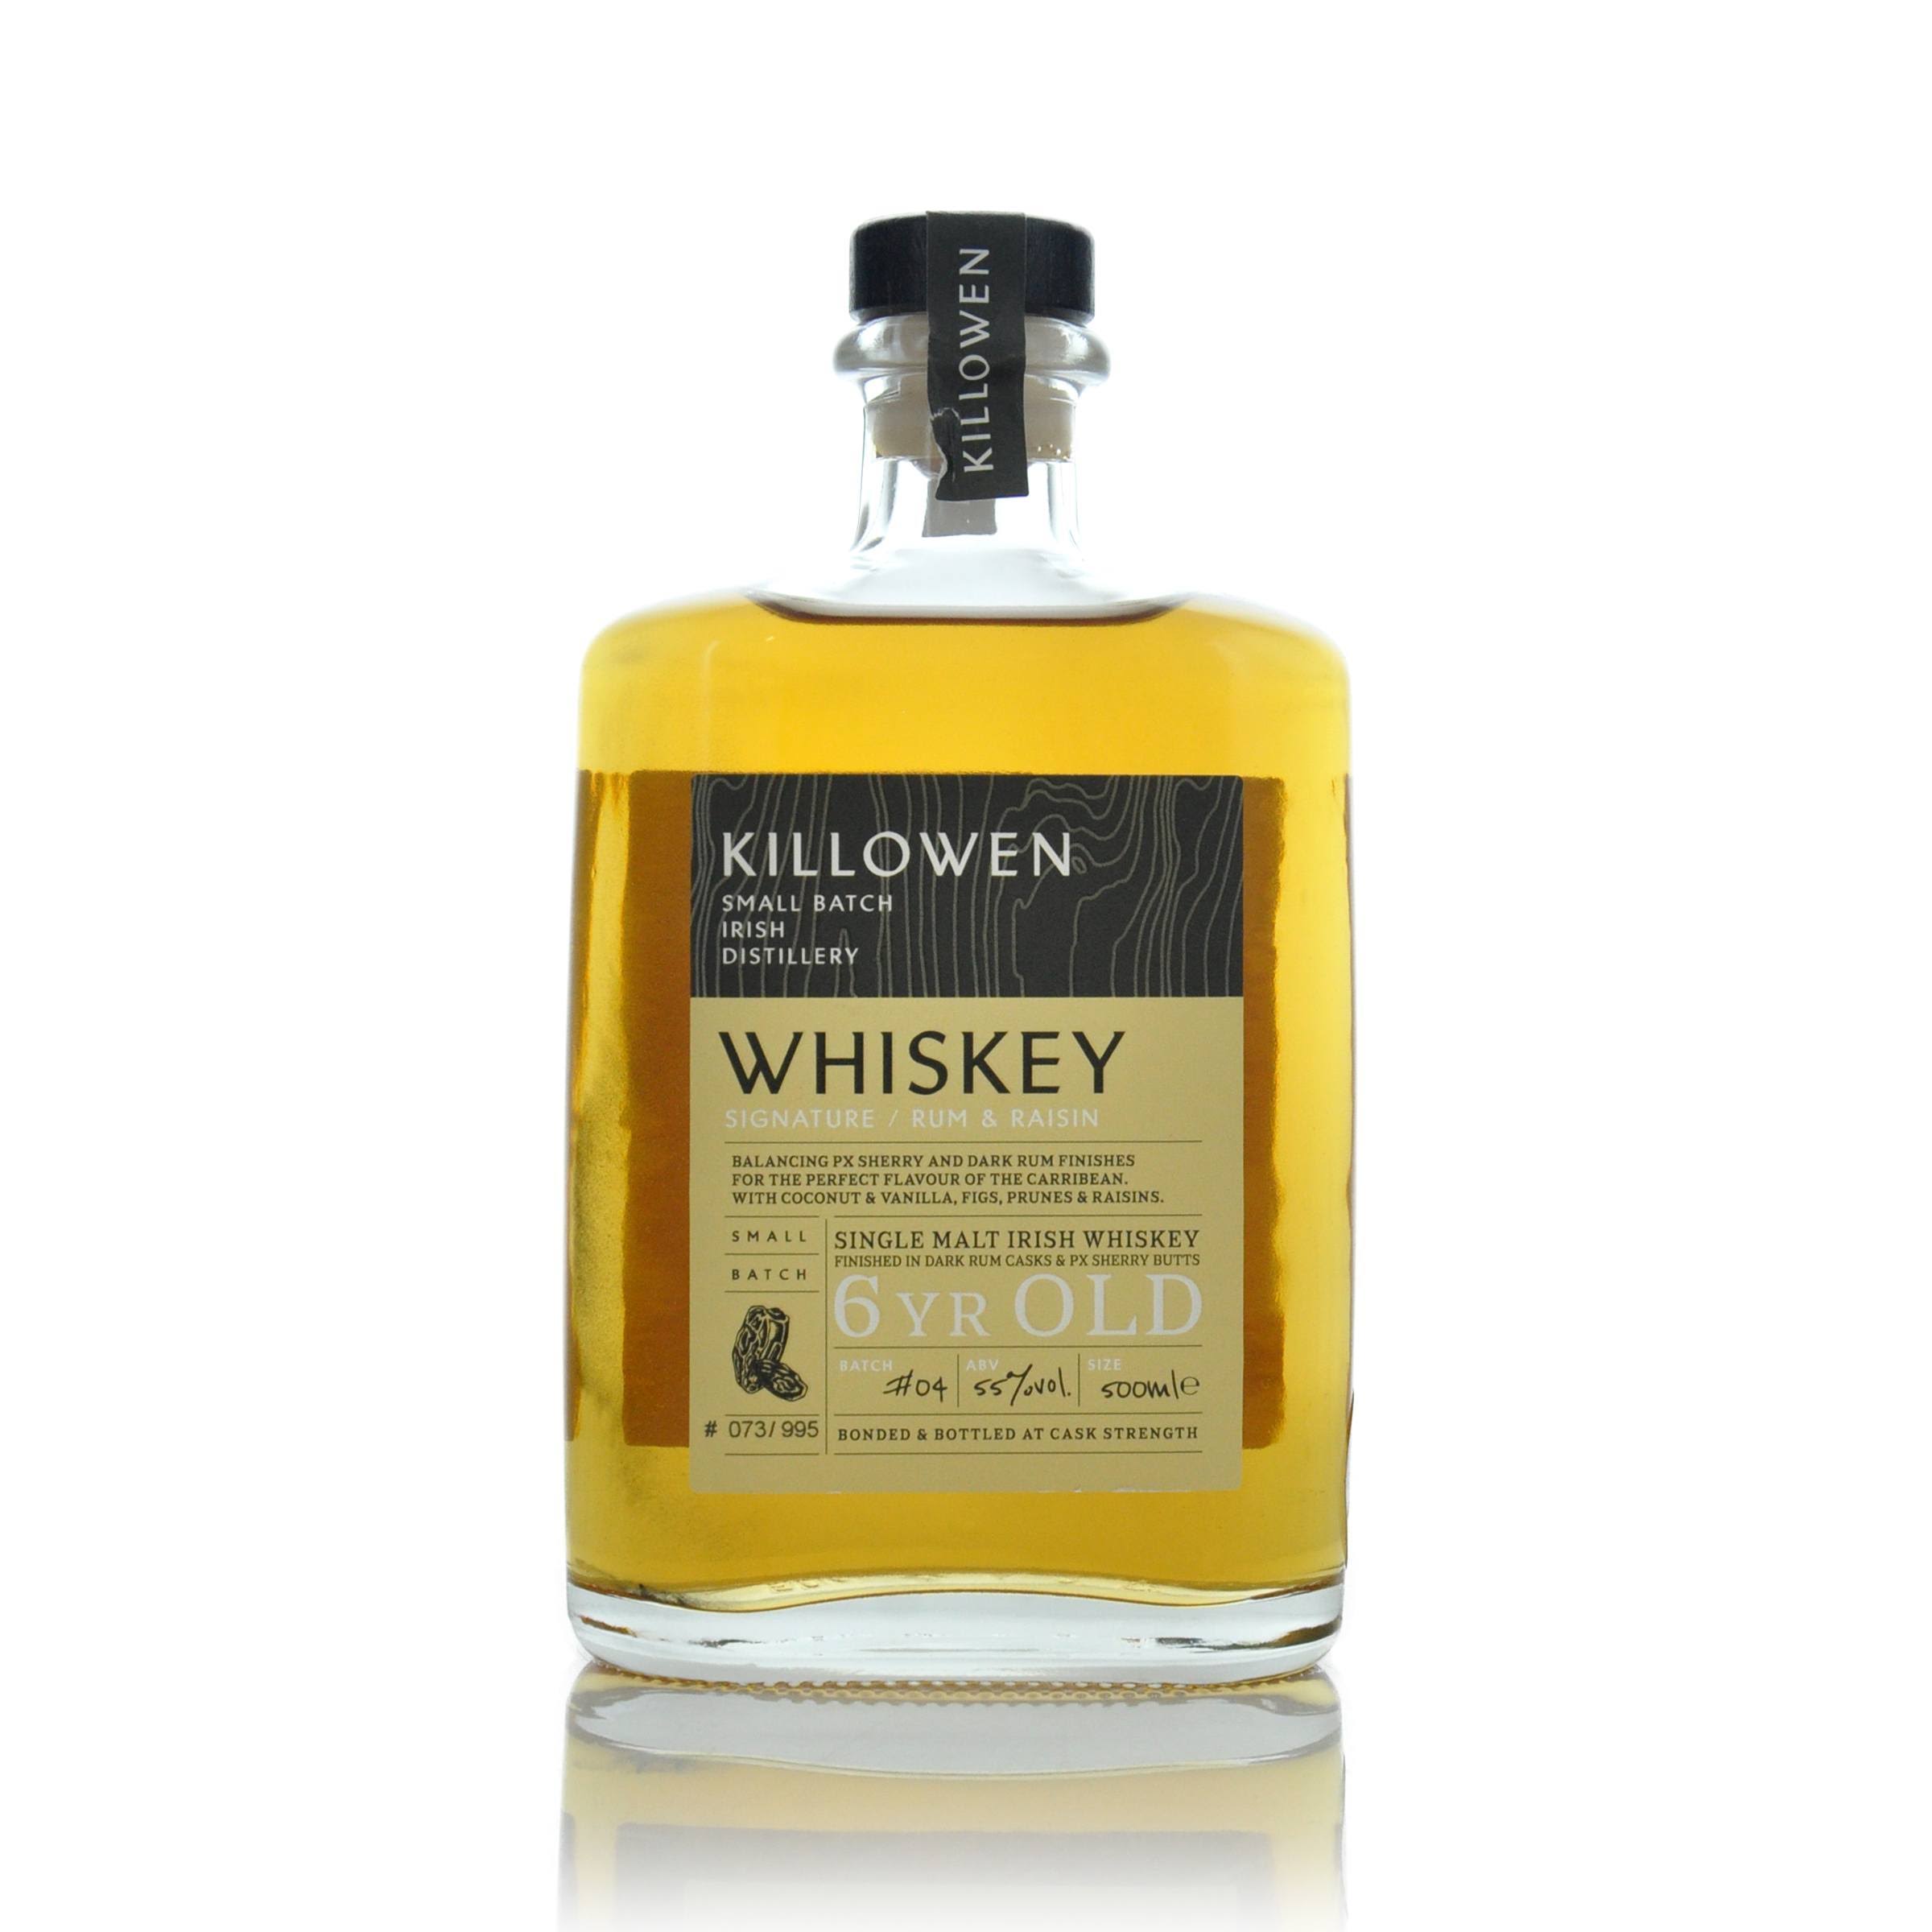 Killowen Rum & Raisin 5 Year Old Single Malt Irish Whisky